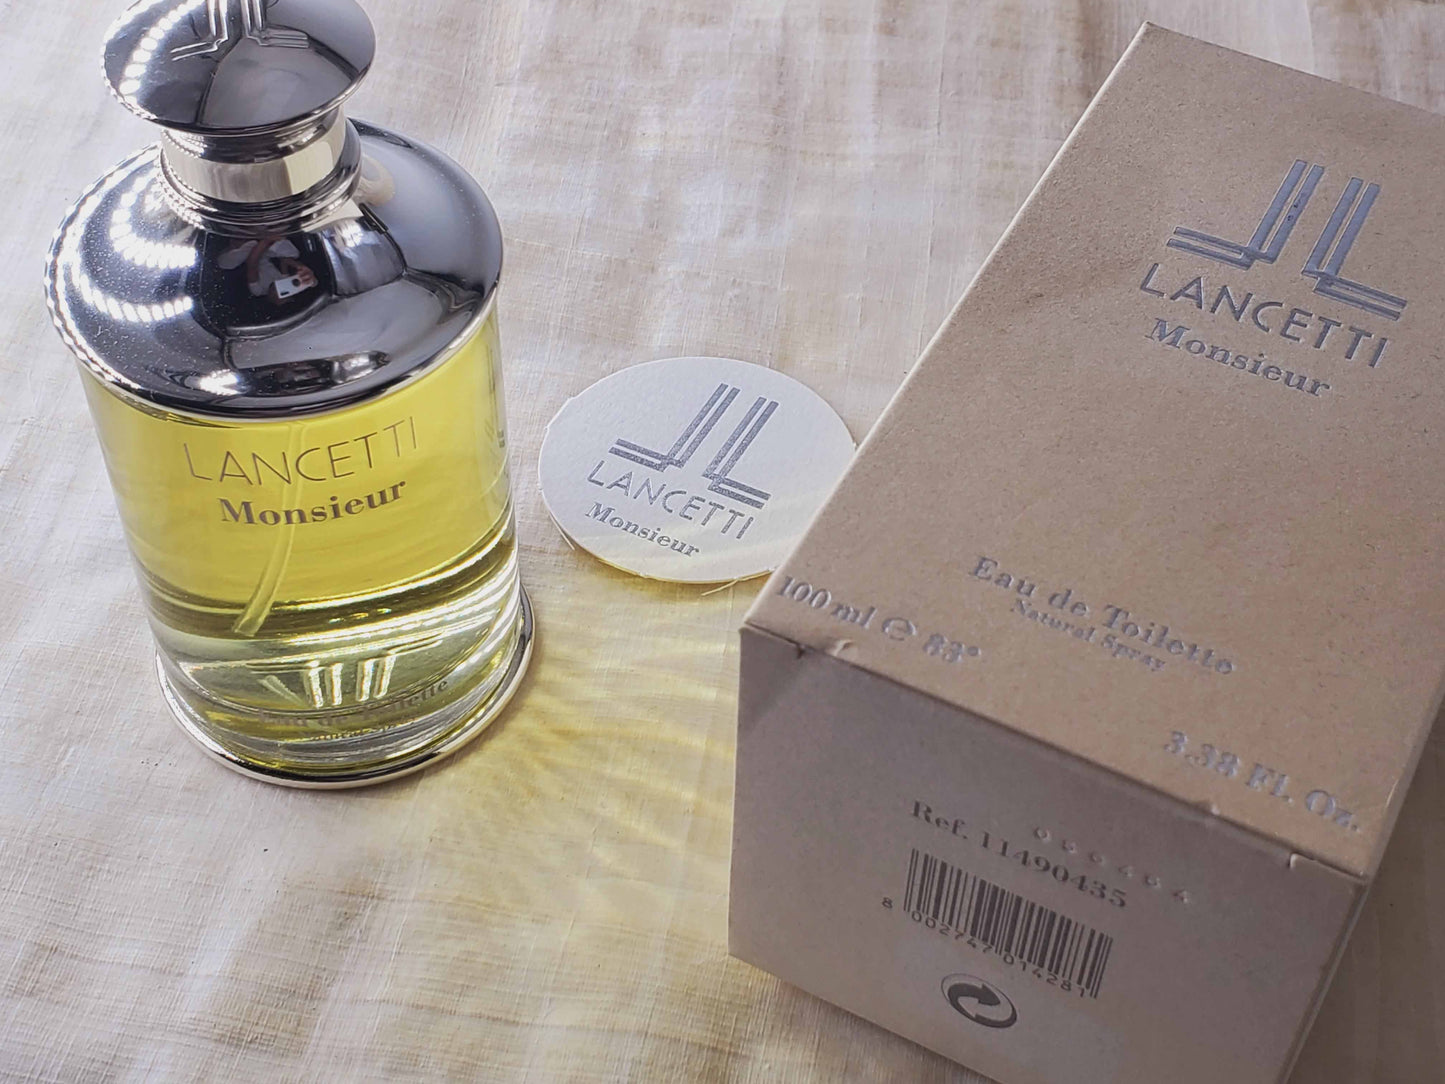 Monsieur Lancetti for men EDT Spray 100 ml 3.4 oz, Rare, Vintage